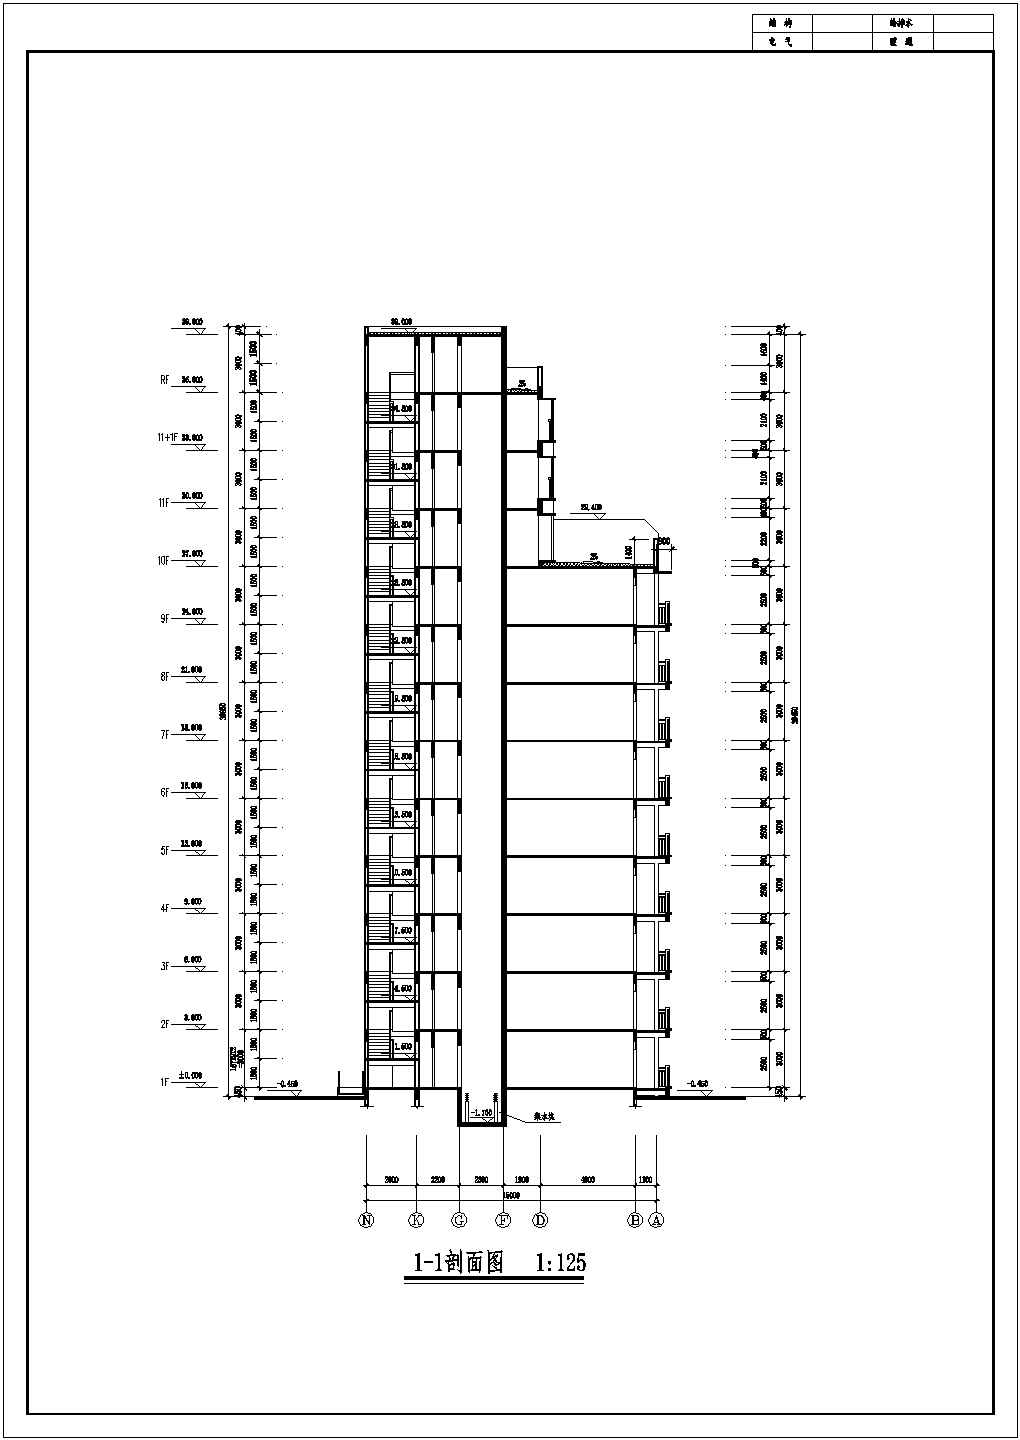 十一层紧凑居住楼砖混结构详细建筑施工设计图